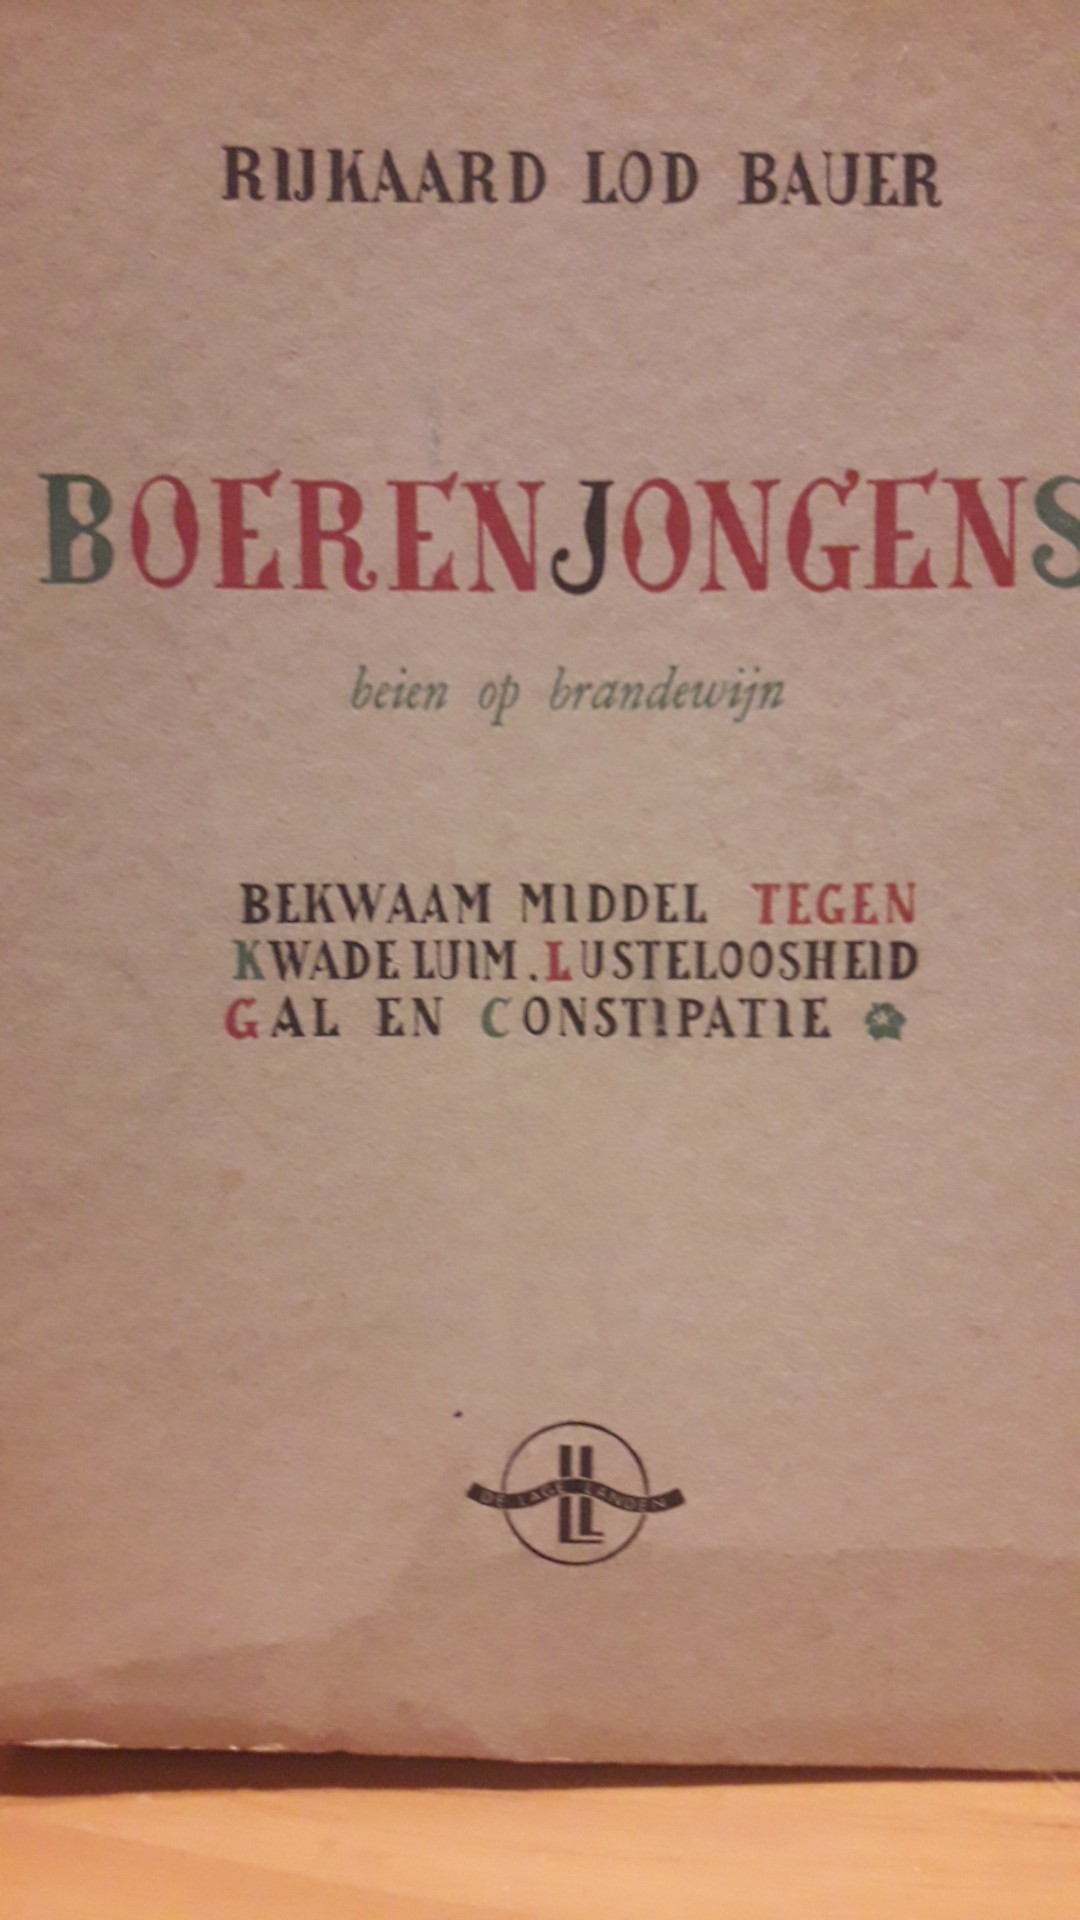 Boerenjongens door Rijkaard Lod Bauer - uitgeverij De Lage landen 1942 / 472 blz